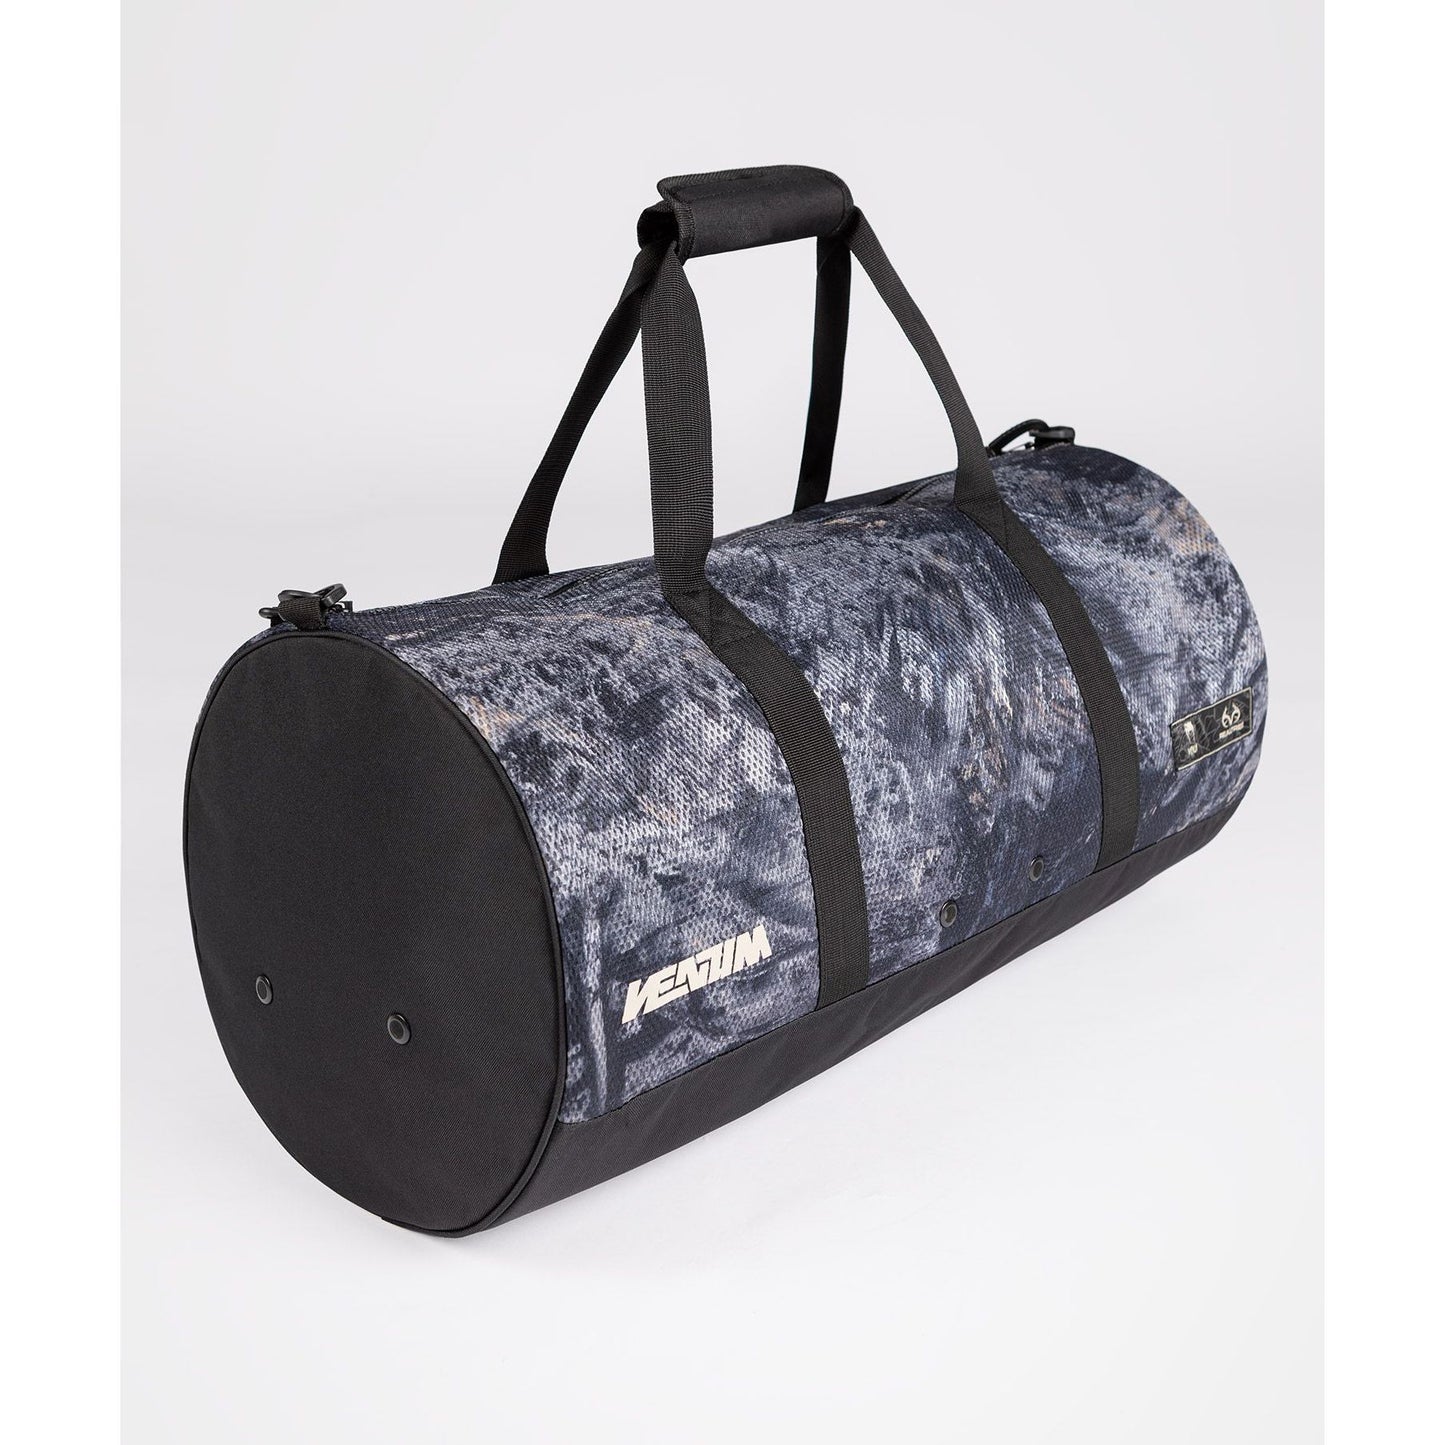 Venum Laser Xt Realtree Duffle Bag